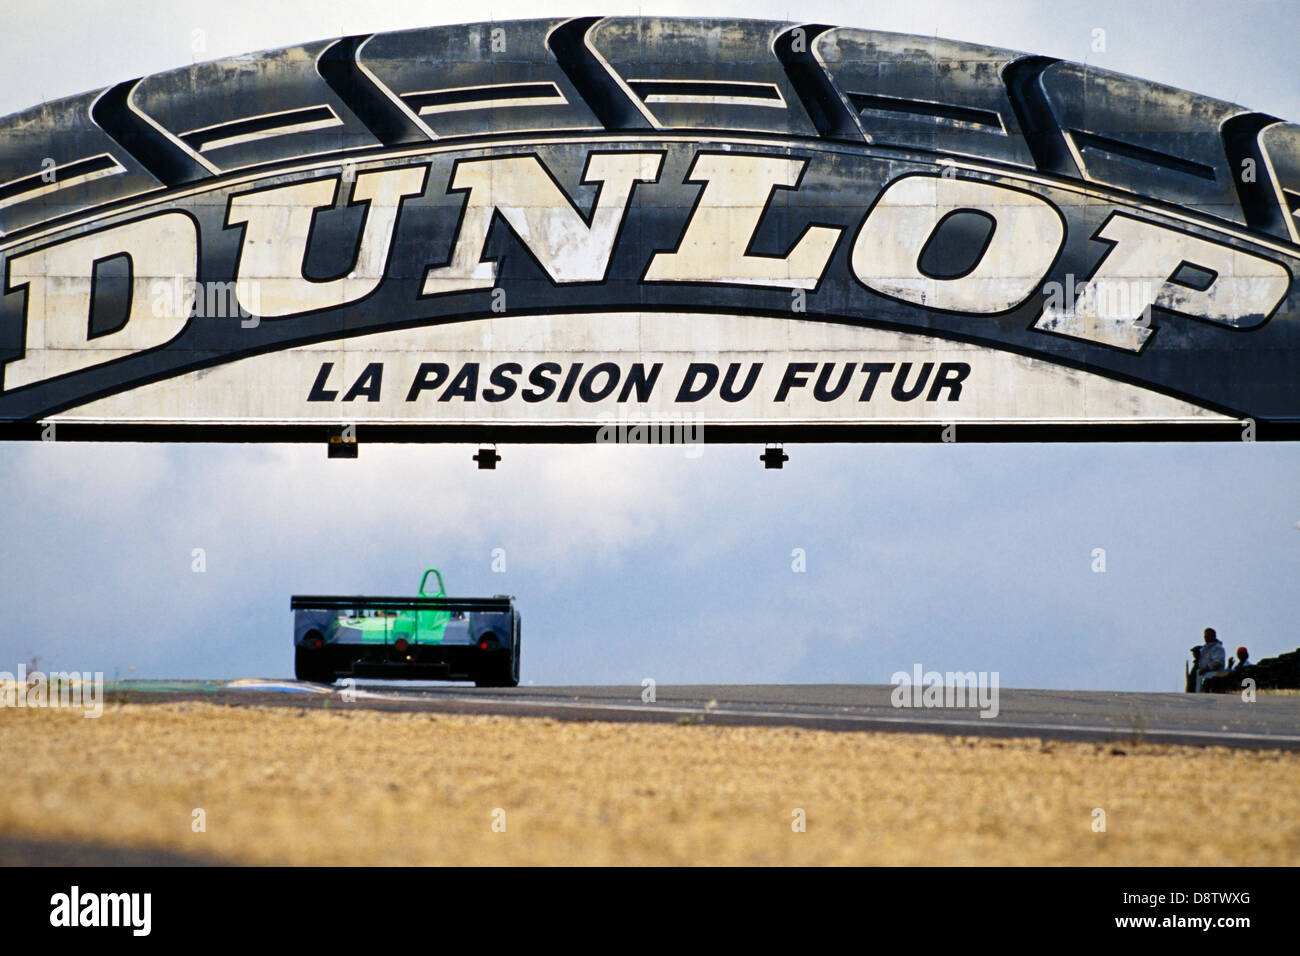 Une voiture de sport MG va sous le pont Dunlop au Mans lors de la course de 24 heures. Banque D'Images